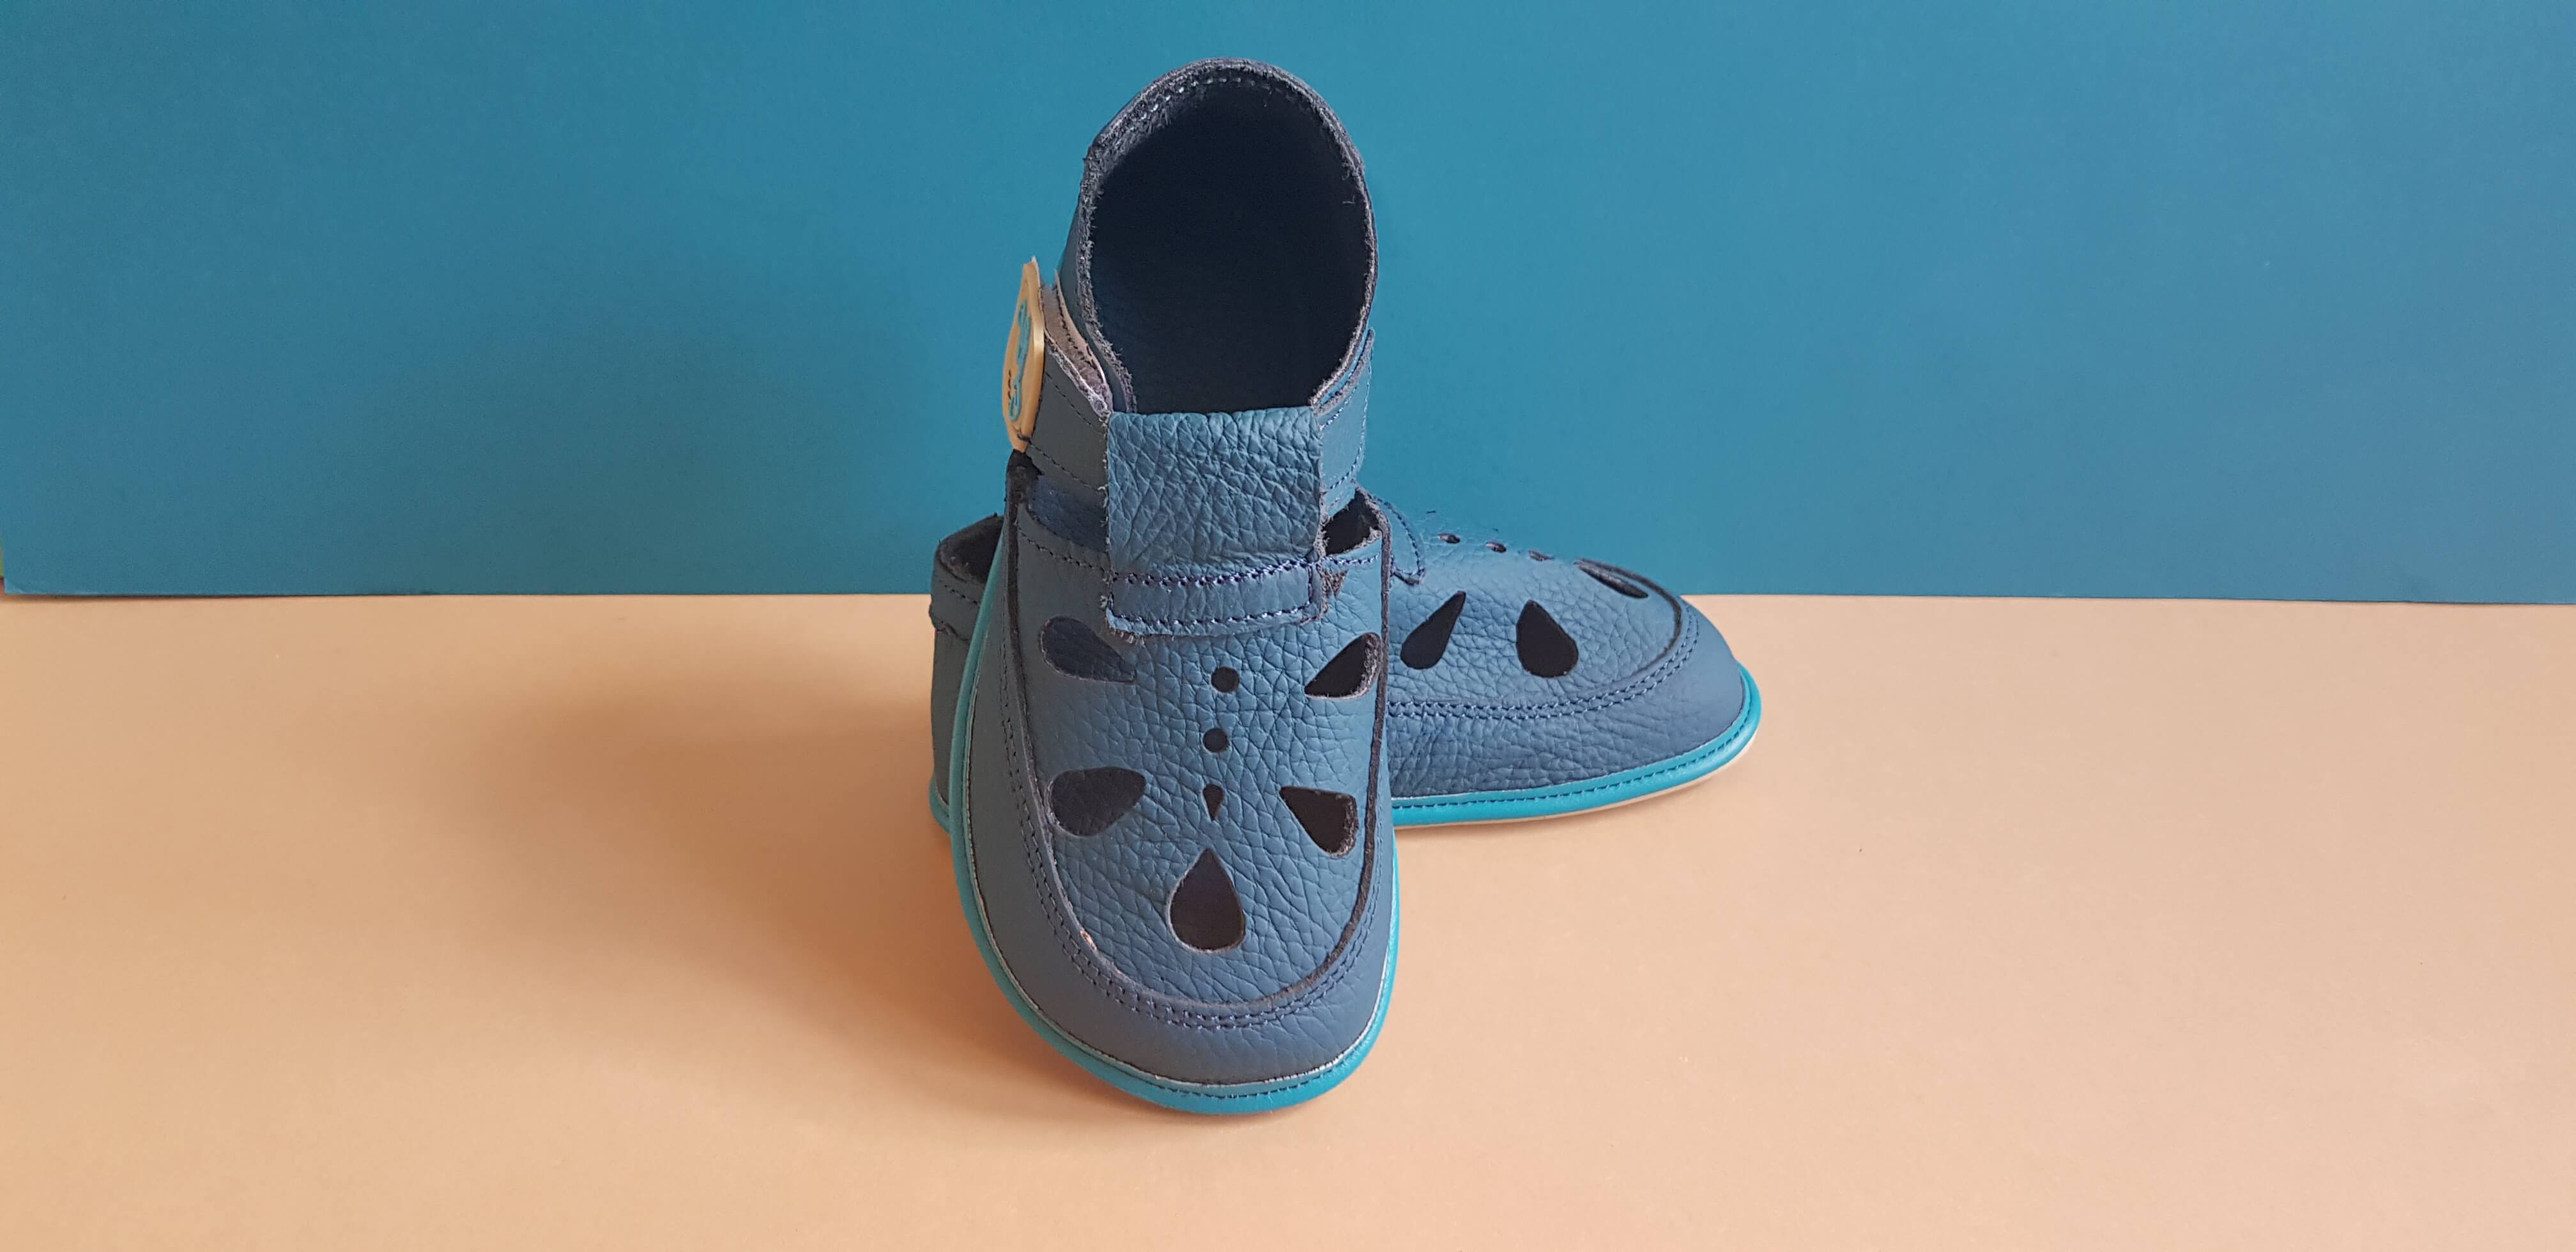 Magical shoes sandals - Blue